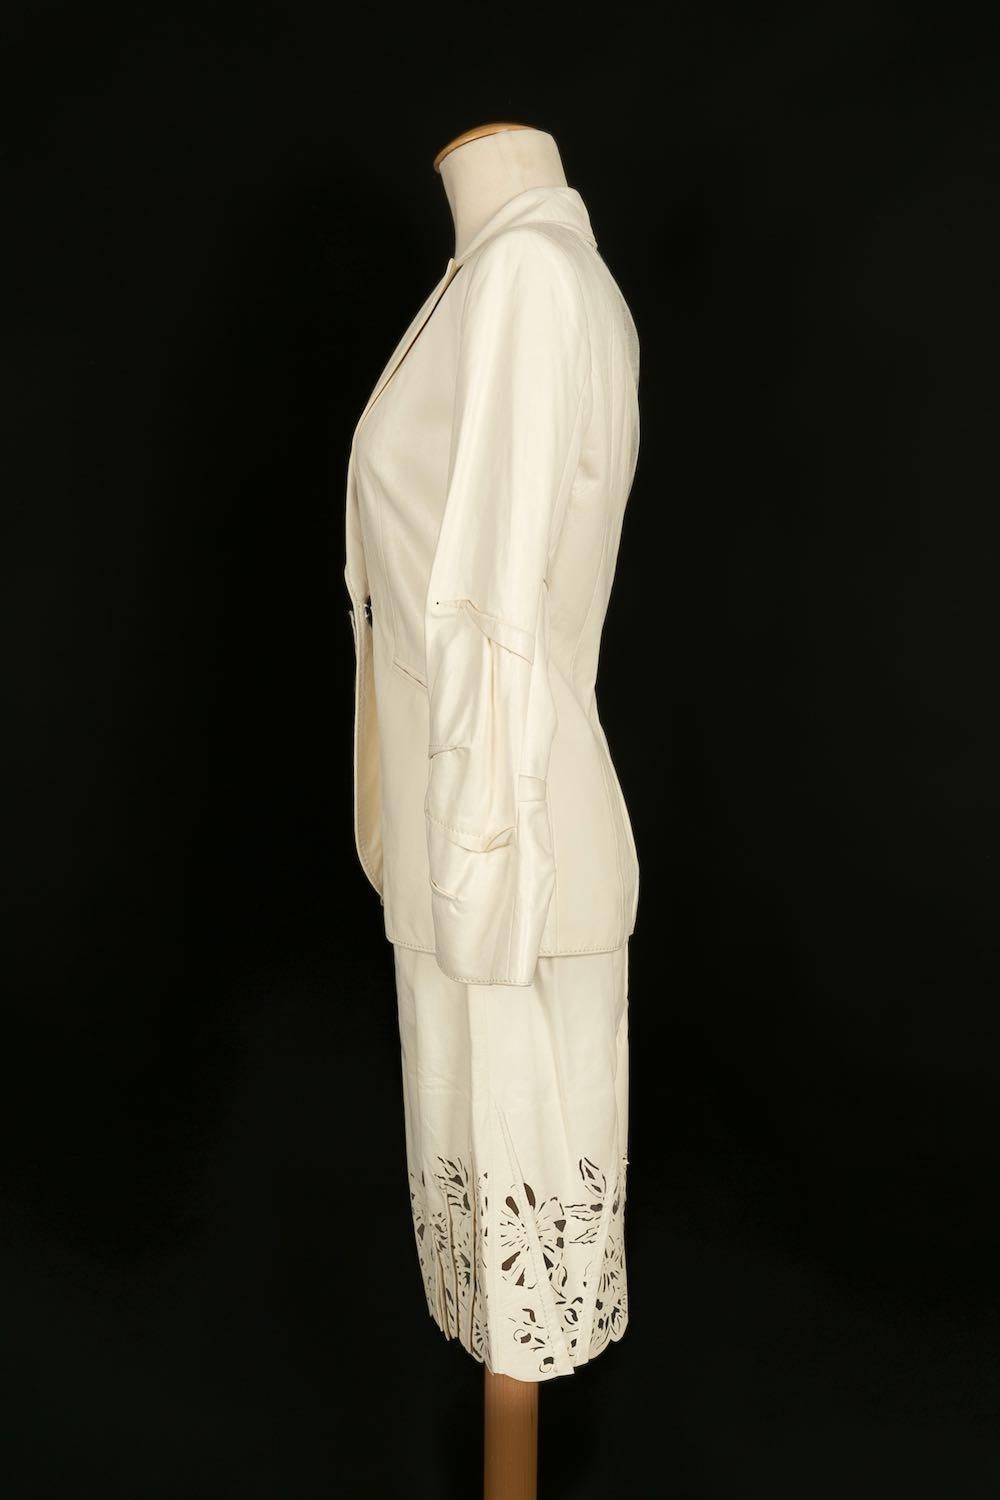 Dior - (Made in France) Ensemble veste et jupe en cuir d'agneau écru. Taille 36FR.
Collectional Automne-Hiver 2006. 

Informations complémentaires : 
Dimensions : Veste : Largeur des épaules : 40 cm, Poitrine : 39 cm, Longueur des manches : 58 cm,